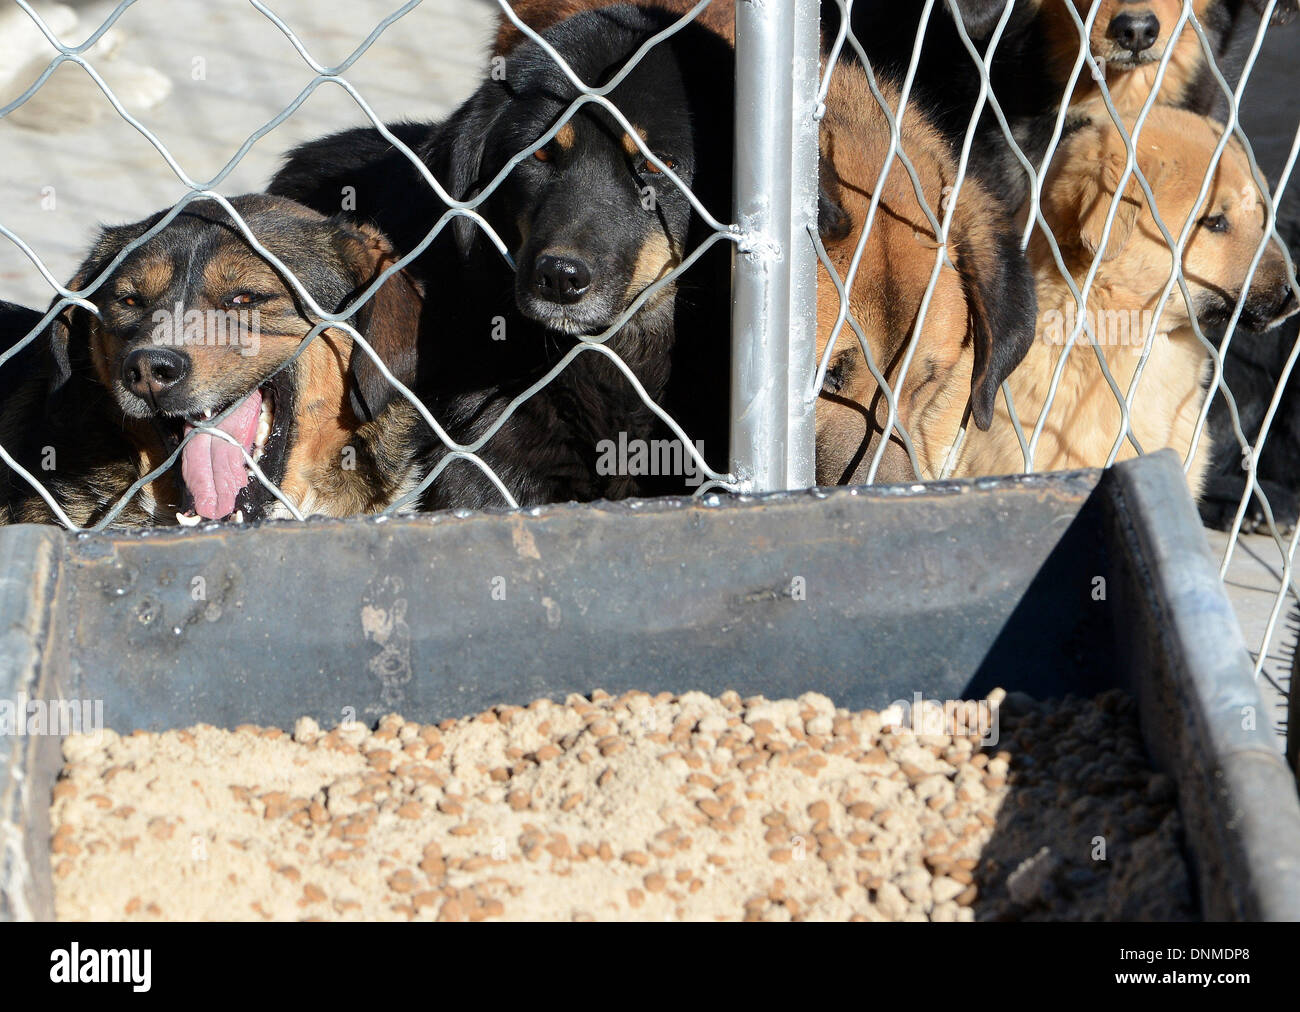 Lhasa, China la Región Autónoma del Tíbet. 2 ene, 2014. Perros en la ciudad centro colectivo de perros callejeros a la espera de ser alimentados en Lhasa, la capital del suroeste de China la Región Autónoma del Tíbet, el 2 de enero, 2013. El centro colectivo, que terminó a fines de 2013, comenzó a tomar en perros callejeros en Lhasa como el Año Nuevo llegó. Más de 600 perros callejeros han sido alojados por el mediodía del jueves. El centro se estableció para evitar la transmisión de enfermedades y proteger a los residentes locales. © Chogo/Xinhua/Alamy Live News Foto de stock